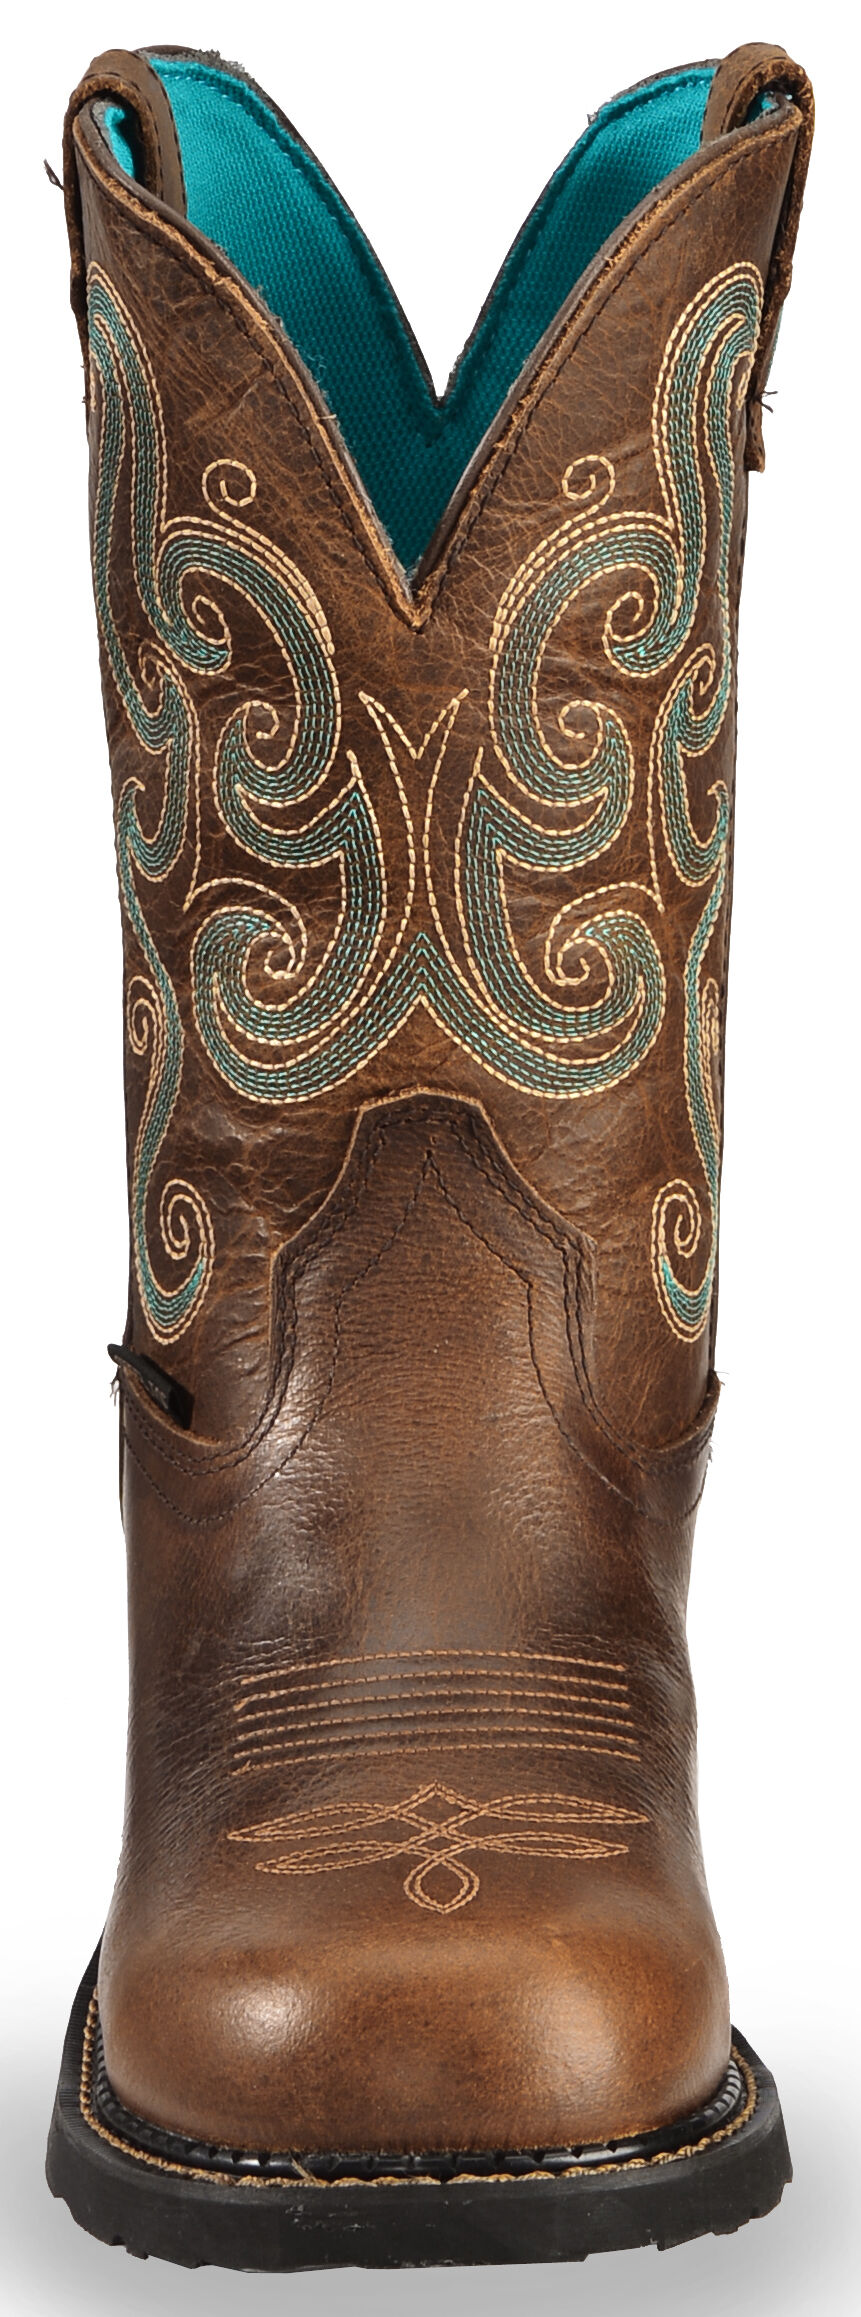 justin gypsy women's waterproof steel toe work boots